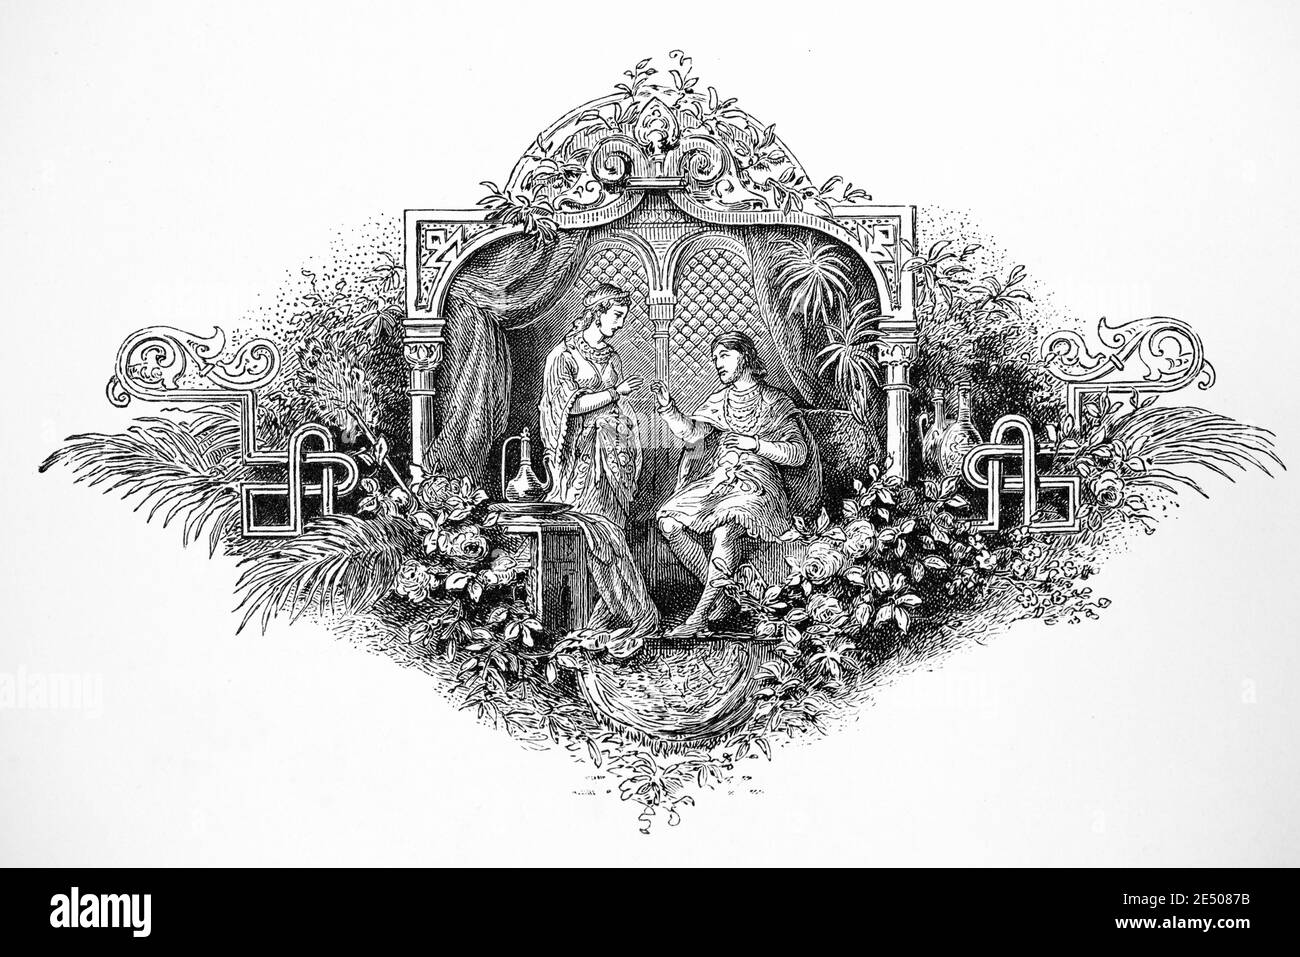 Ilustración de Heine´s poema 'Prinzessin Sabbath' o Prncess Sabbat, escritor y poeta alemán Heinrich Heine, colección de poemas Romancero, 1880 Foto de stock